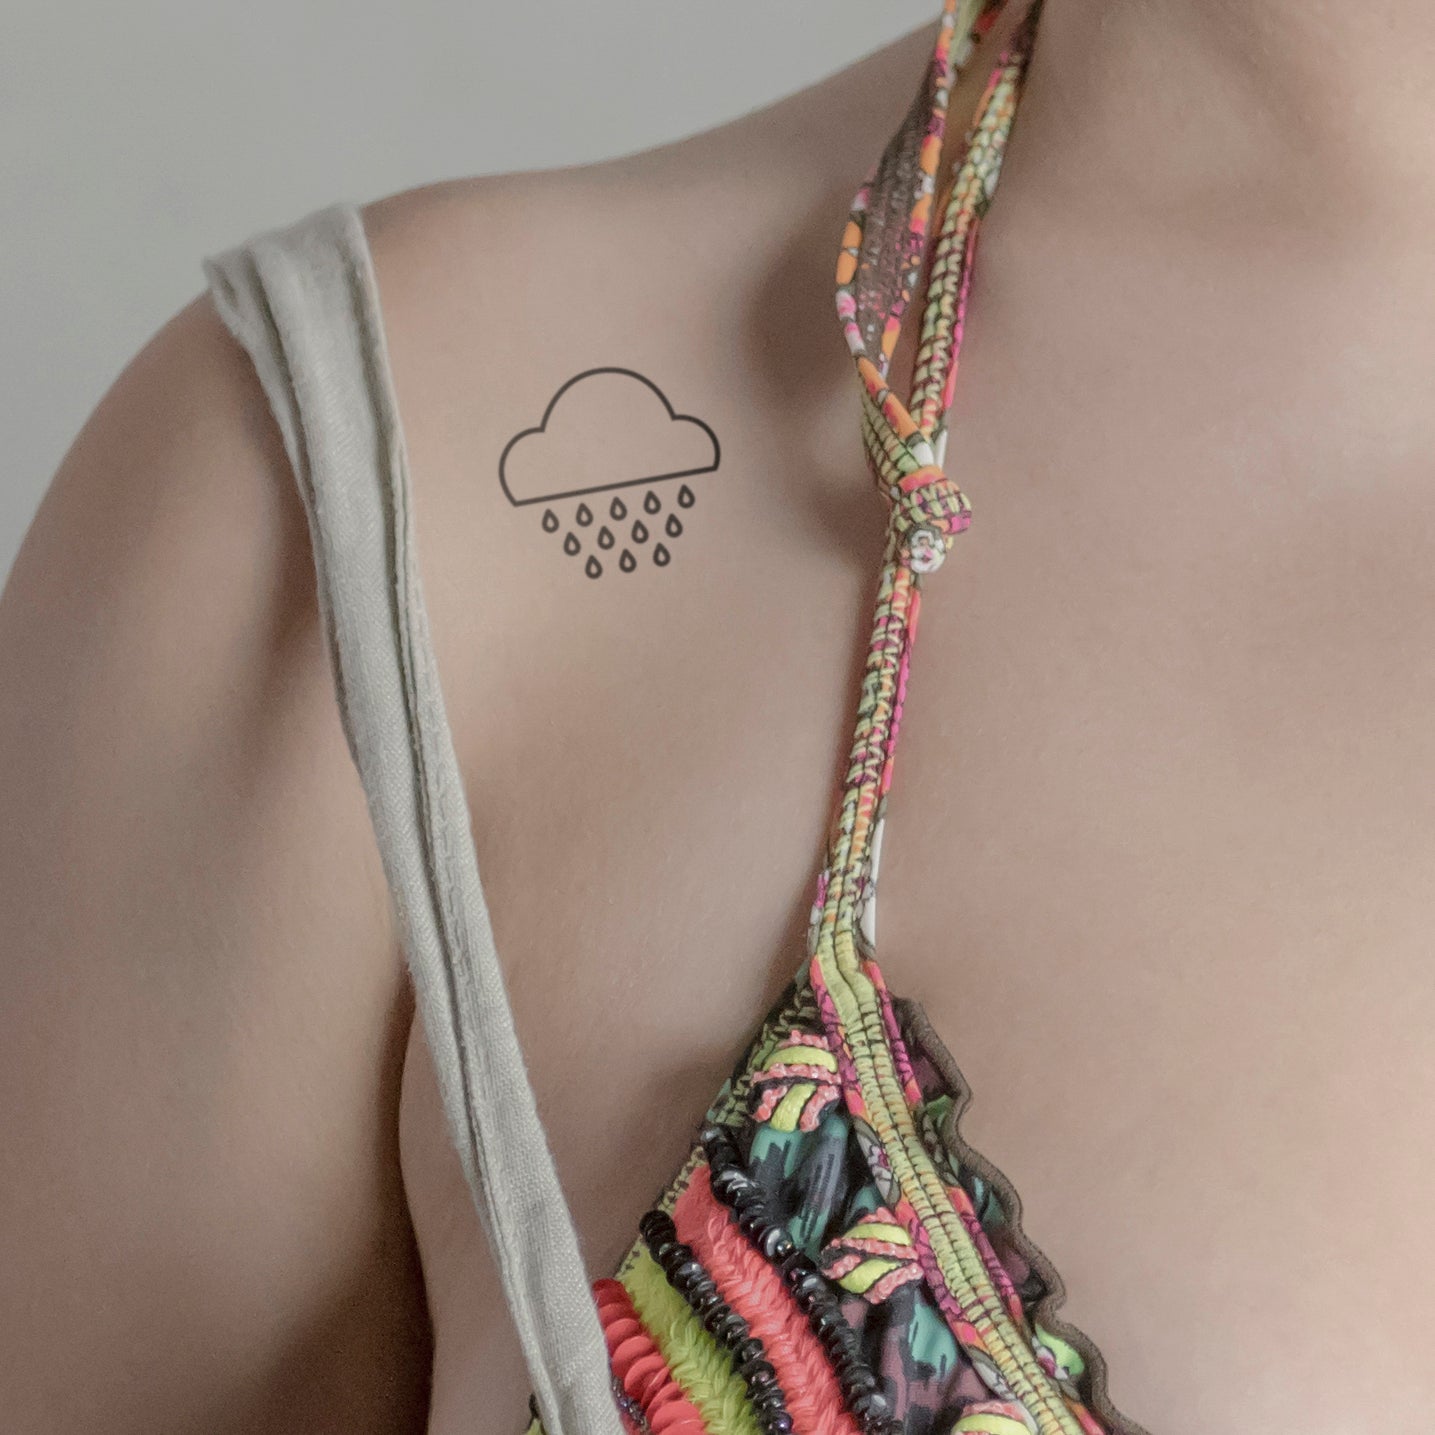 Regenwolken Tattoo von minink, der Marke für temporäre Tattoos.